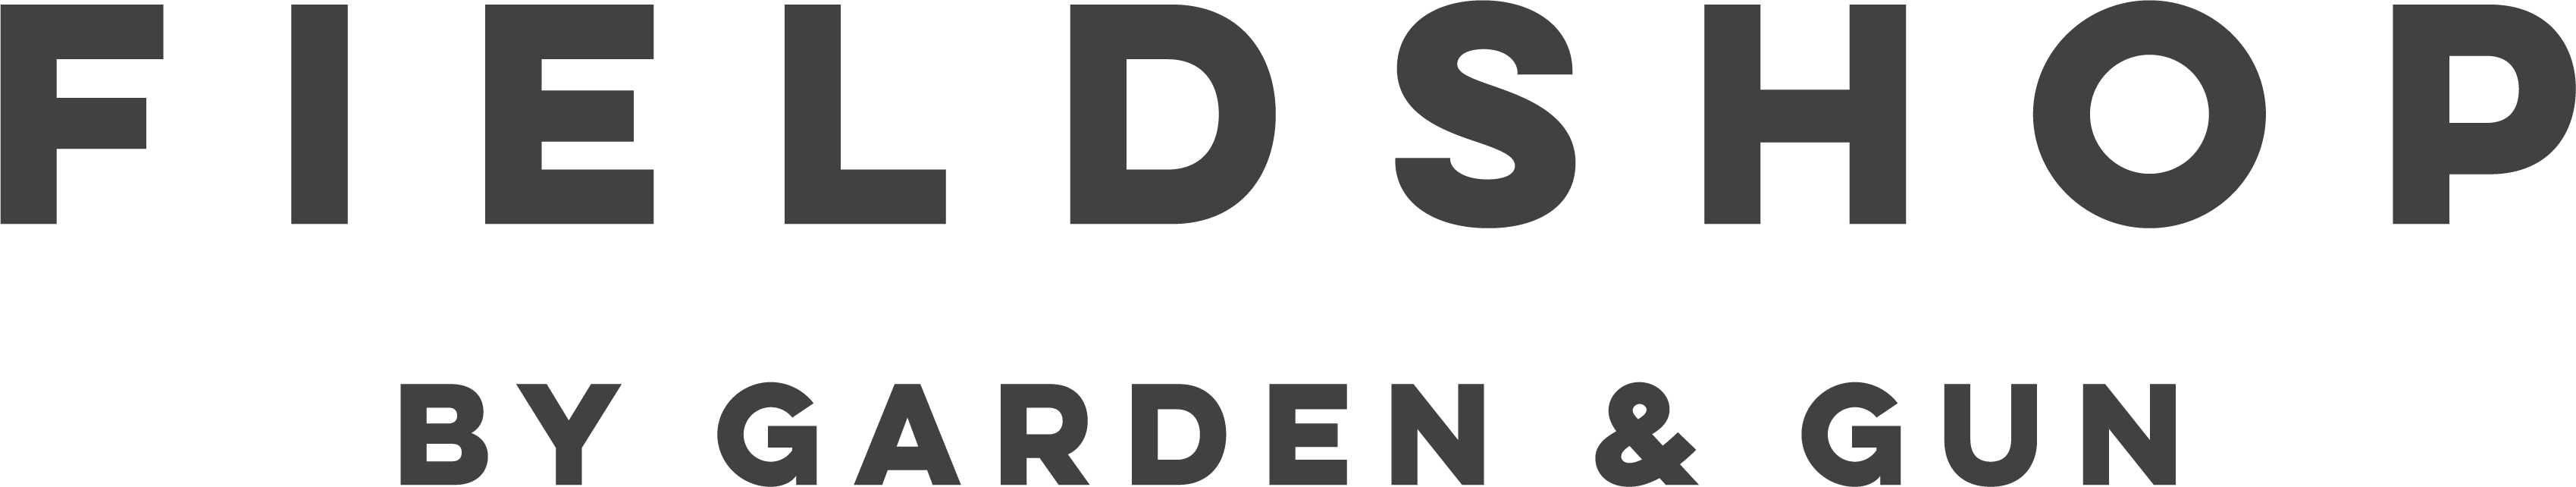 Fieldshop by Garden & Gun Logo in dark grey